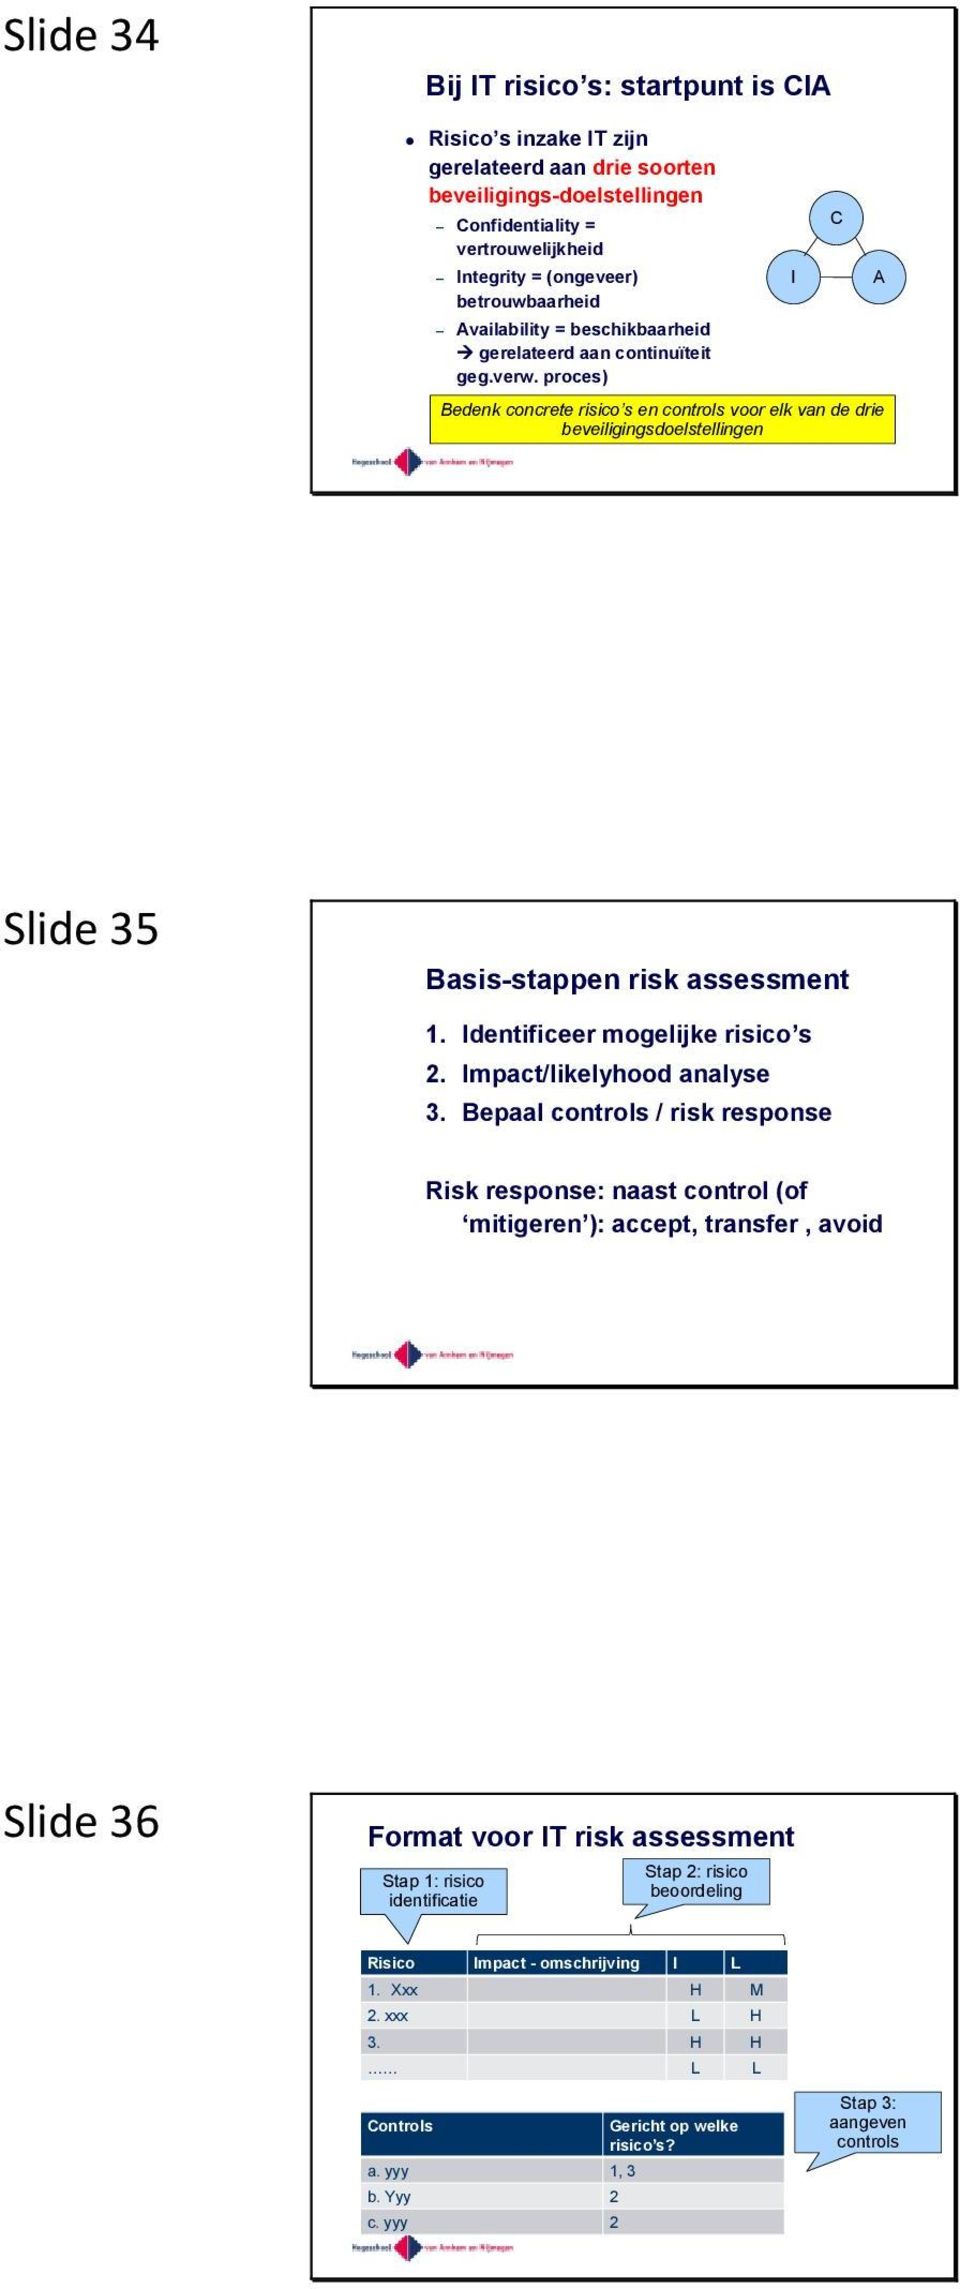 proces) I C A Bedenk concrete risico s en controls voor elk van de drie beveiligingsdoelstellingen Slide 35 Basis-stappen risk assessment 1. Identificeer mogelijke risico s 2.